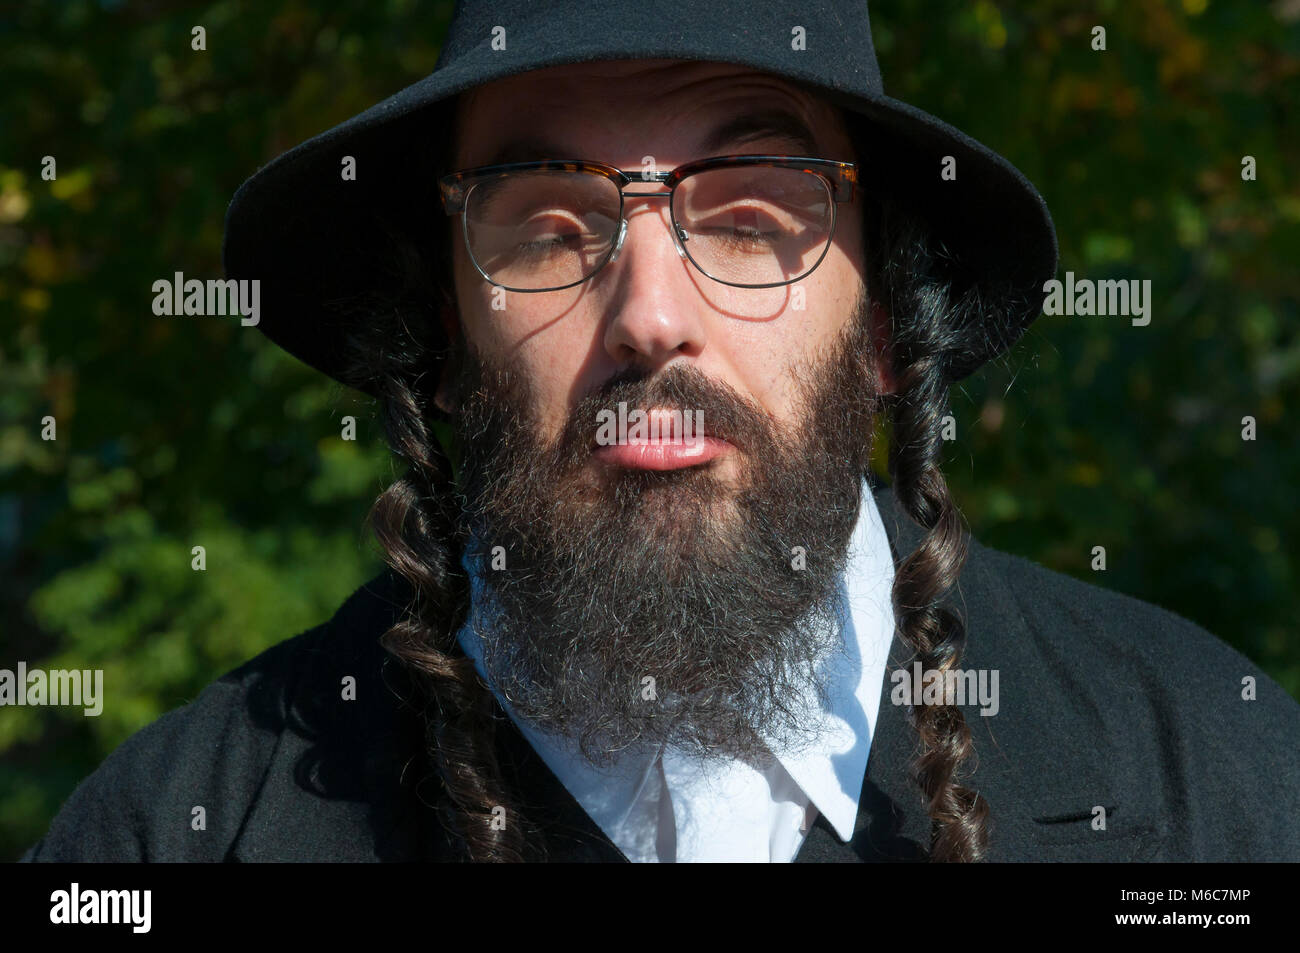 Außenbereich sonnige Portrait von verwirrten geschlossenen Augen jungen traditionellen orthodoxen jüdischen Mann mit schwarzen Bart und Hut Brille tragen Stockfoto